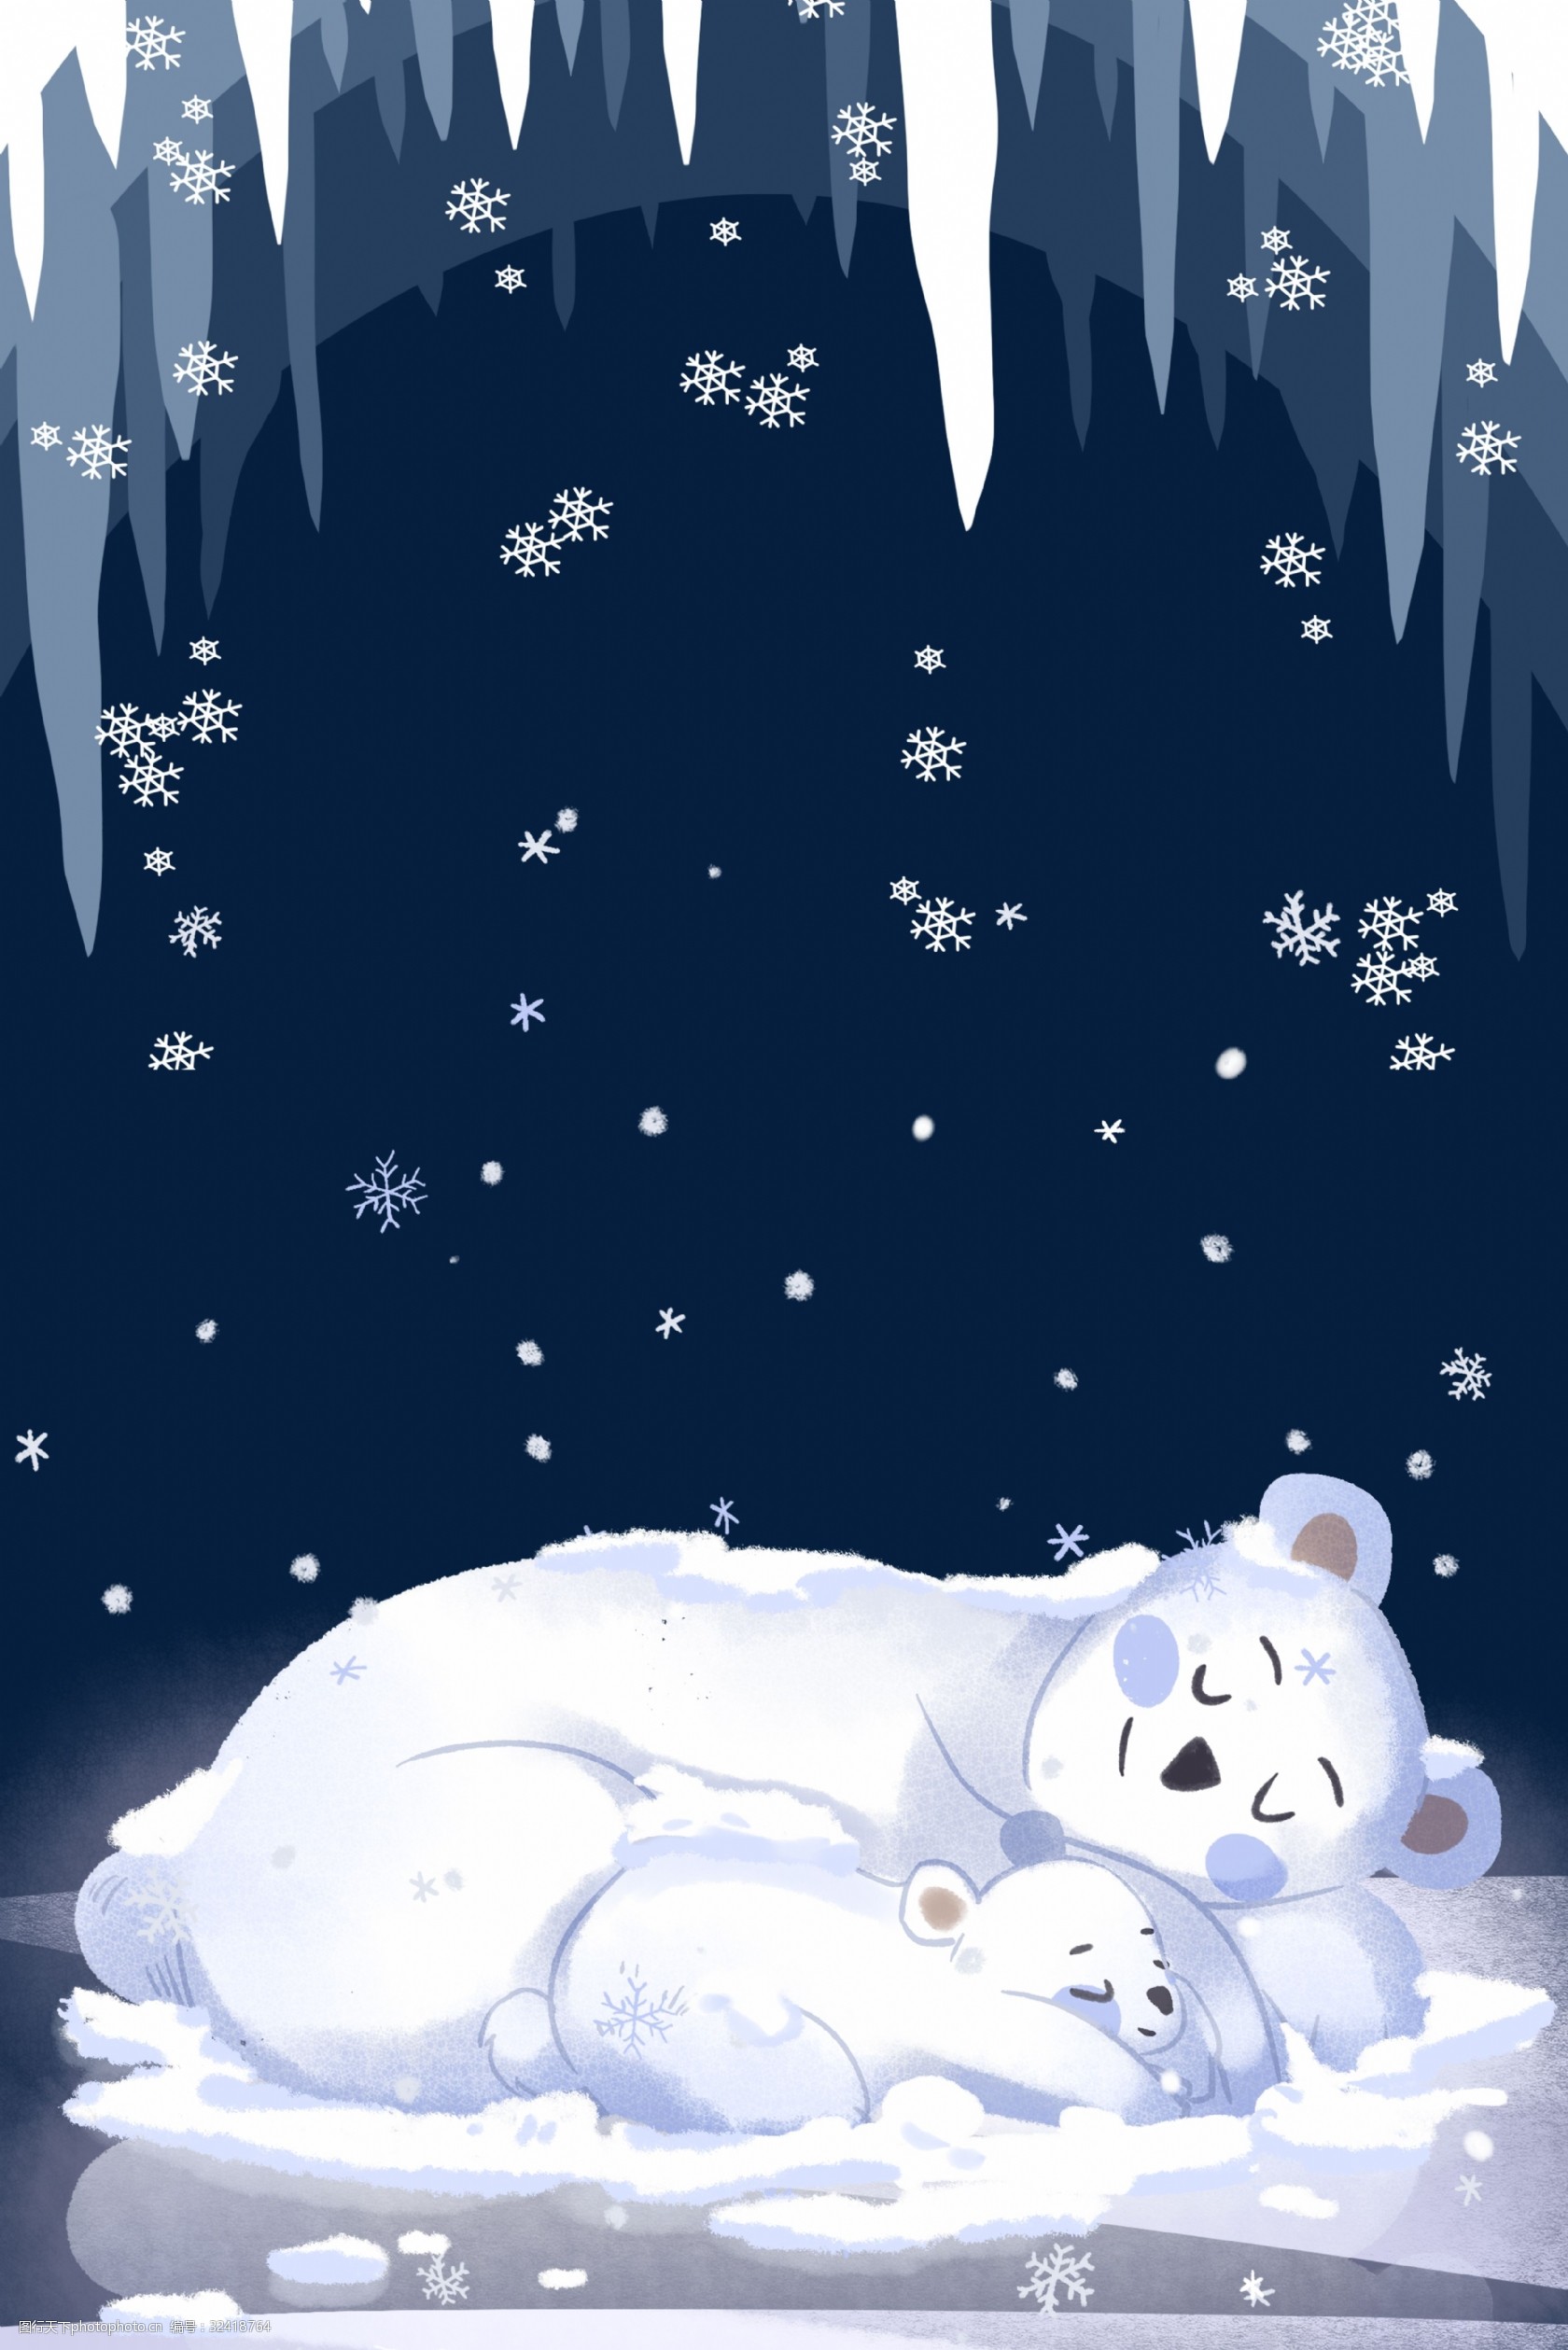 大雪 传统二十四节气 雪花海报背景 雪 冰雪 北极熊 节气背景 下雪